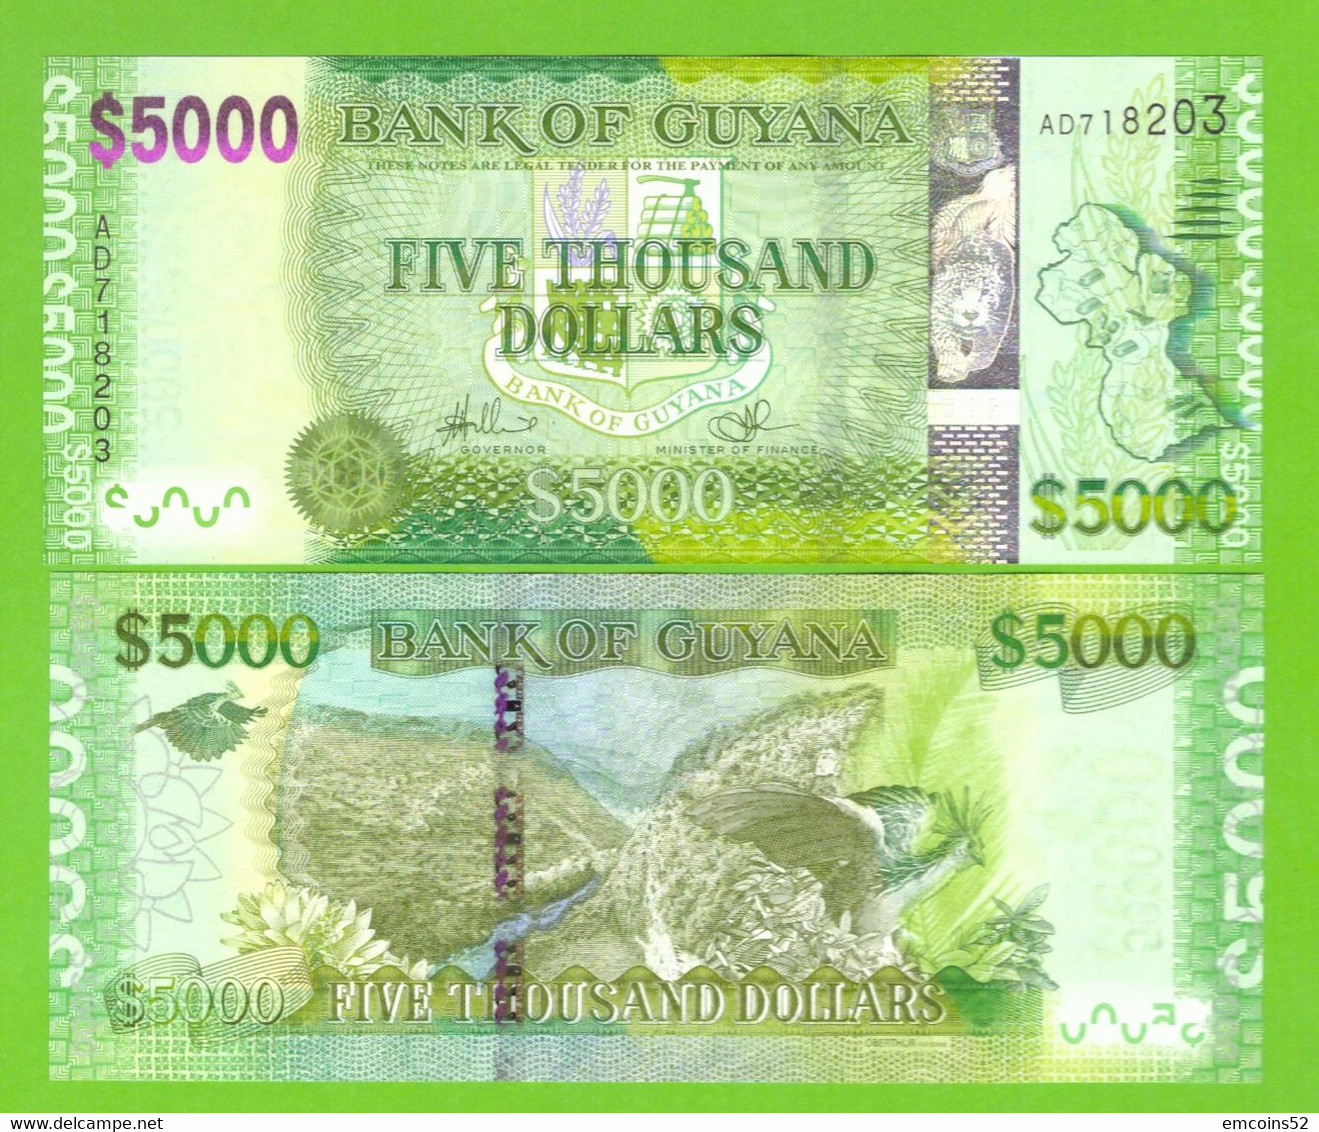 GUYANA 5000 DOLLARS 2013- P-40a(1) UNC - Guyana